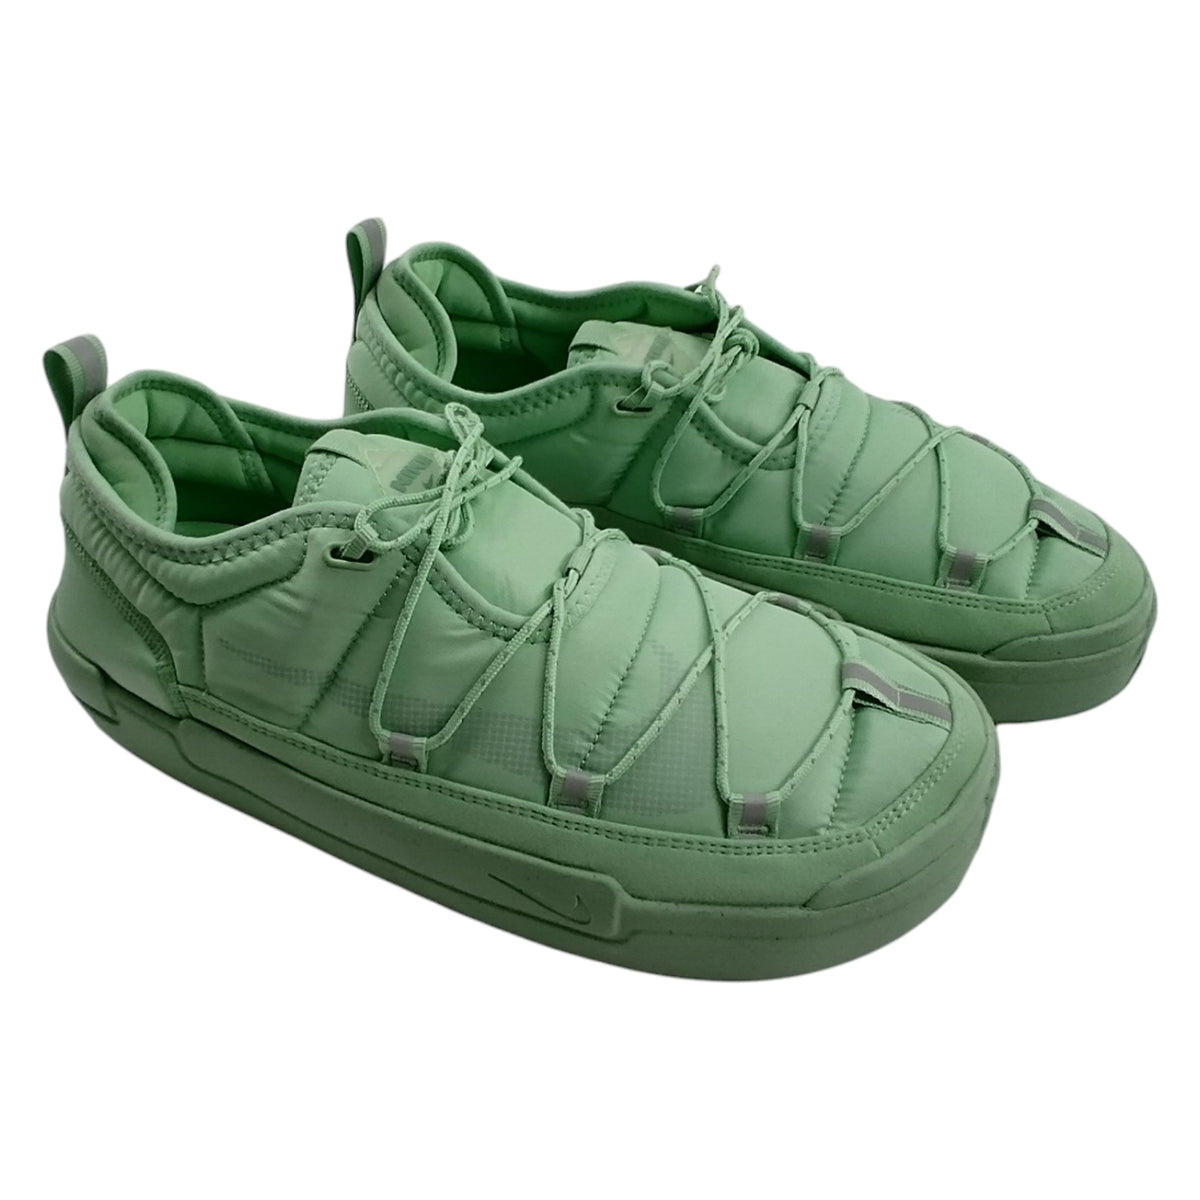 Nike Green/Jade Offline Pack